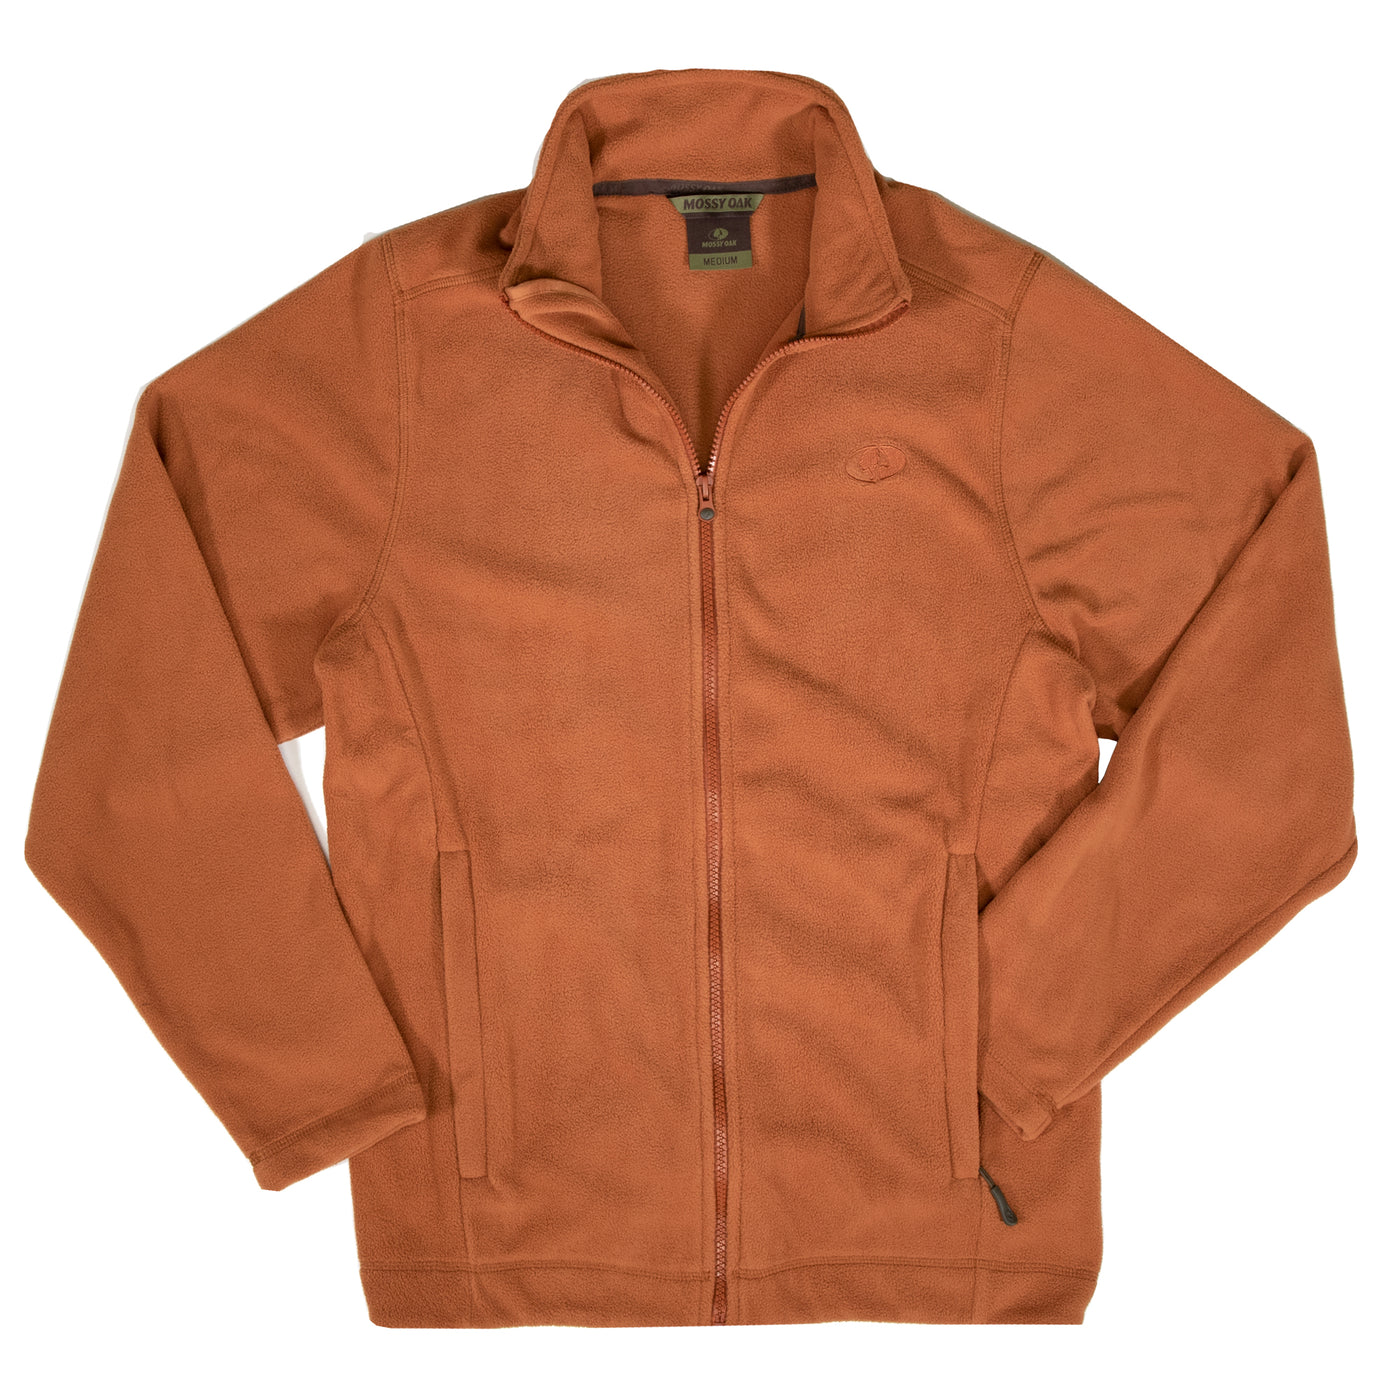 Mossy Oak Fleece Jacket Sierra